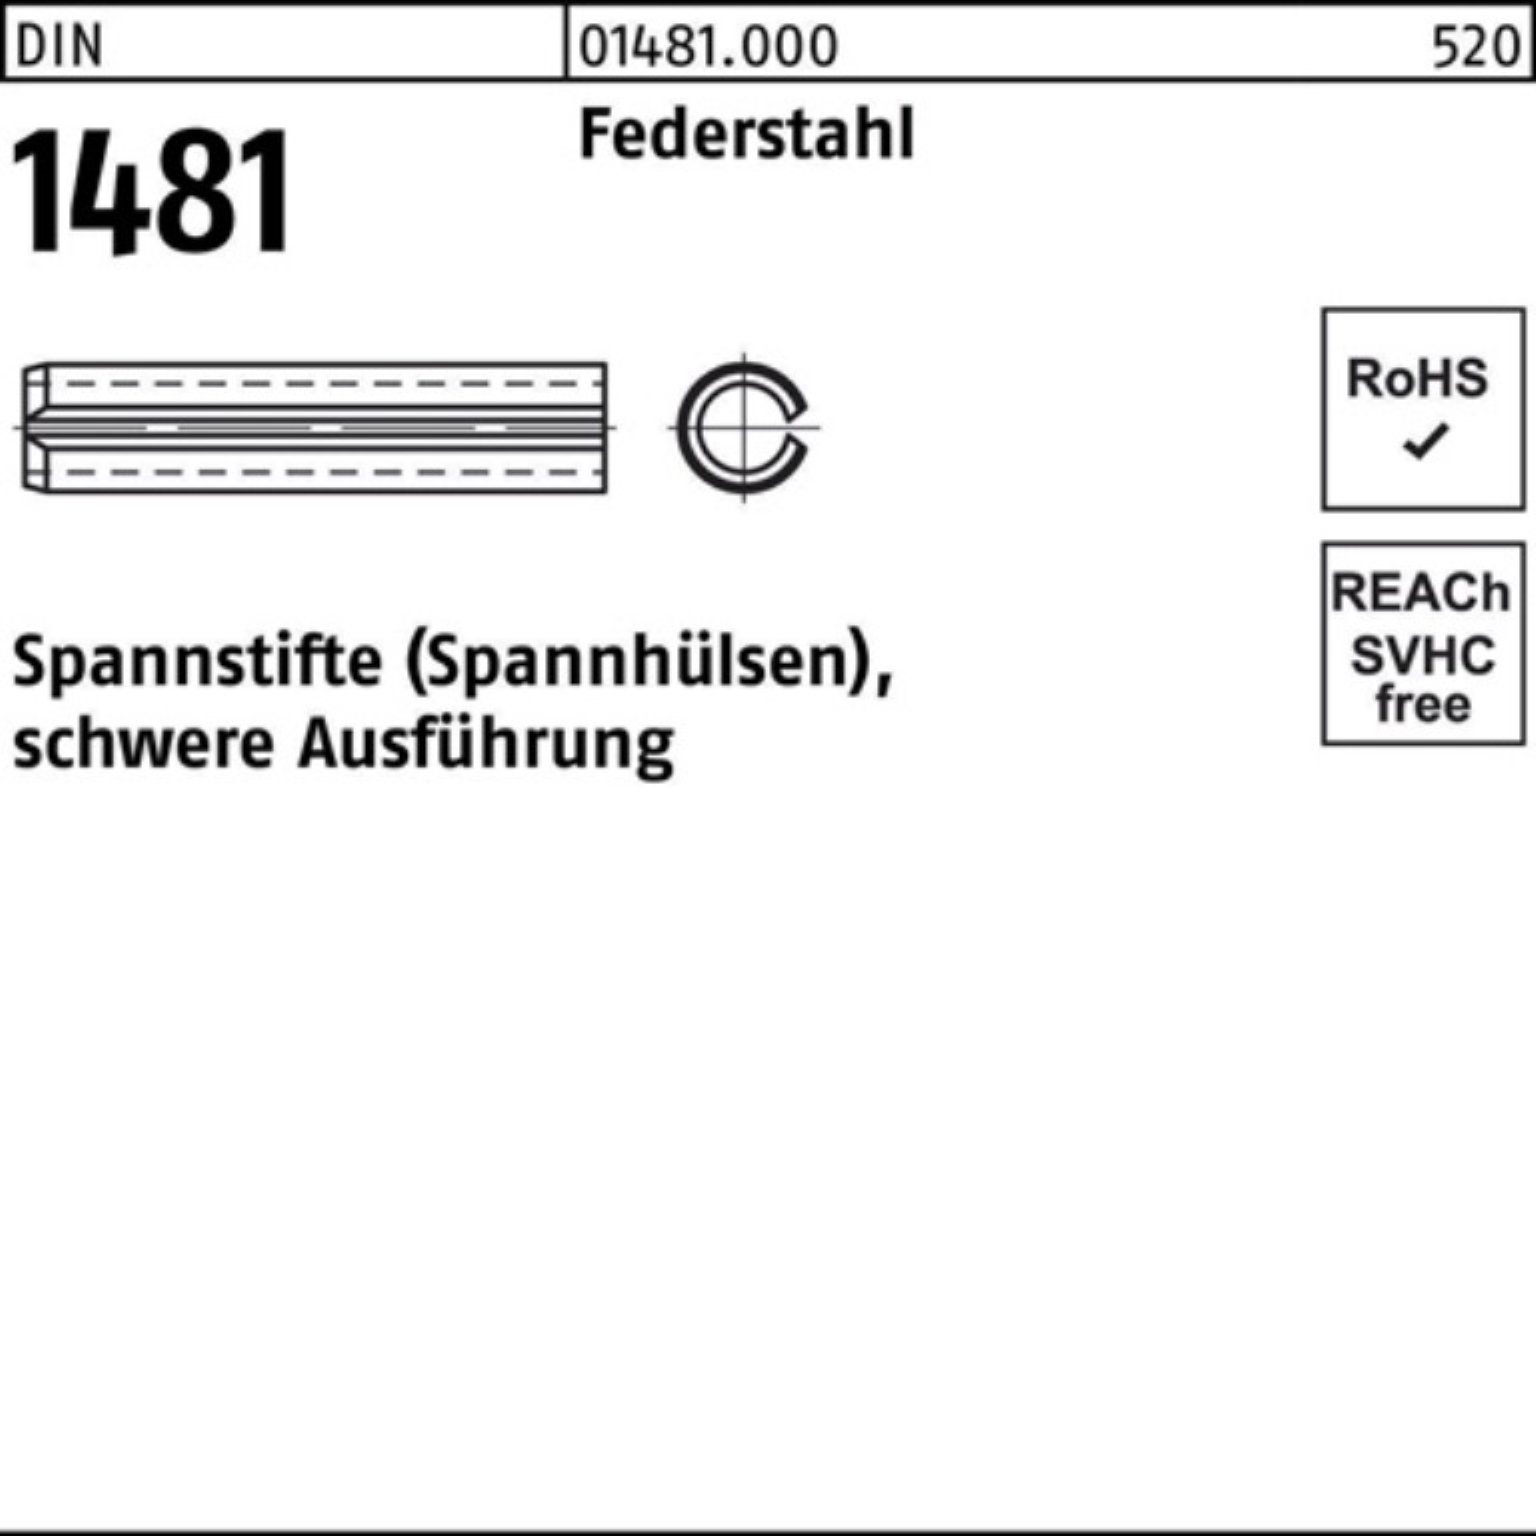 Federstahl Spannstift 3,5x Ausführung 1481 Reyher Spannstift DIN Pack schwere 200er 20